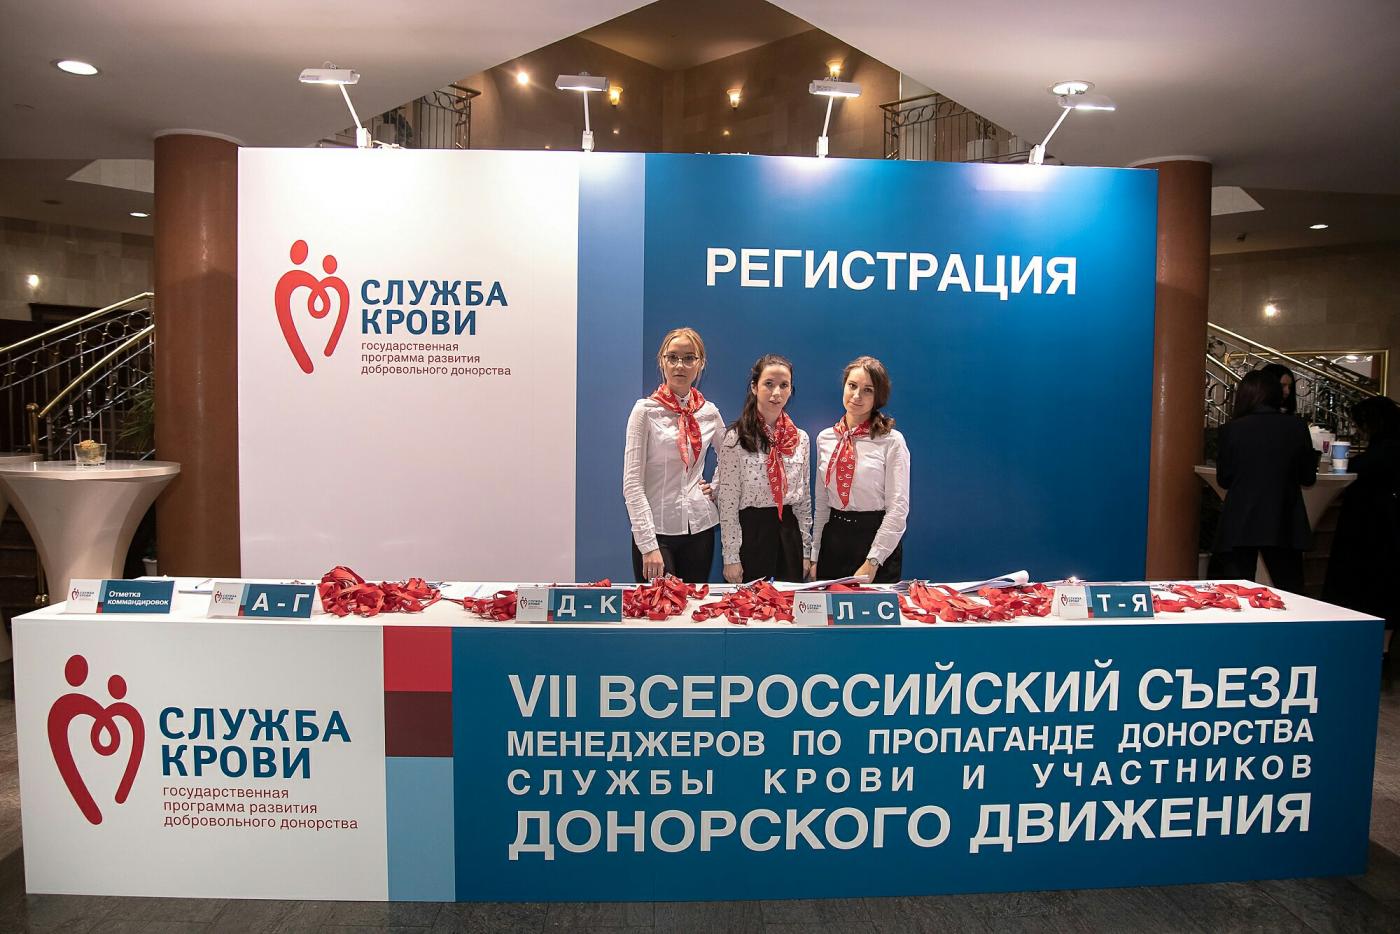 Калининградцы приняли участие в ежегодном VII Всероссийском съезде работников Службы крови и участников донорского движения